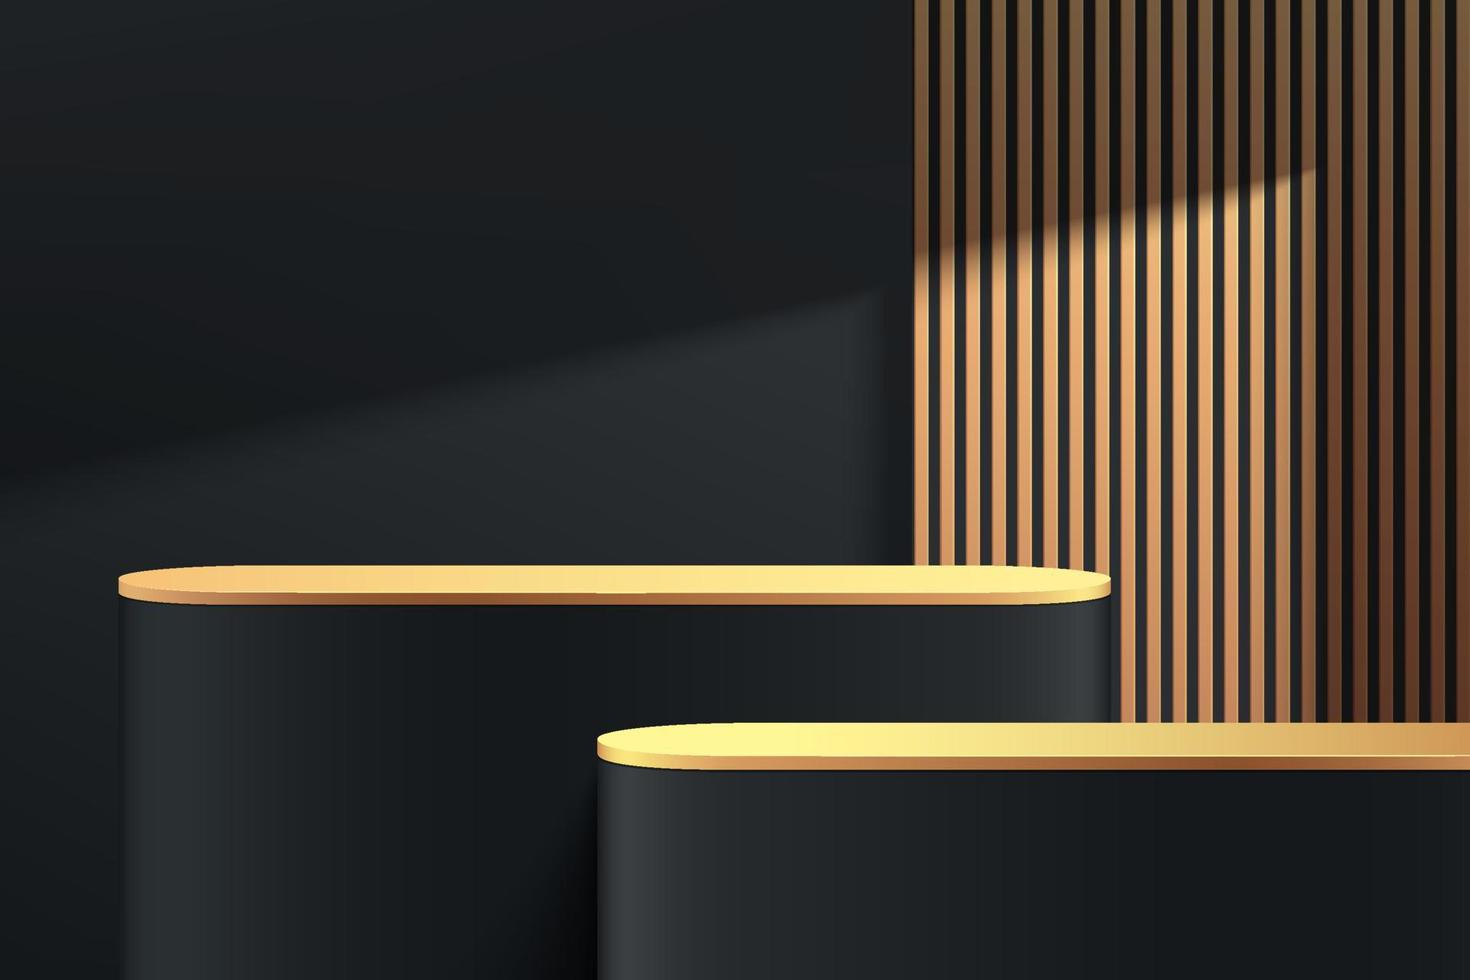 podium de piédestal rond noir 3d abstrait avec rayures verticales dorées et ombre. scène de mur minimal sombre de luxe. plate-forme géométrique de rendu vectoriel moderne pour la présentation de l'affichage du produit.